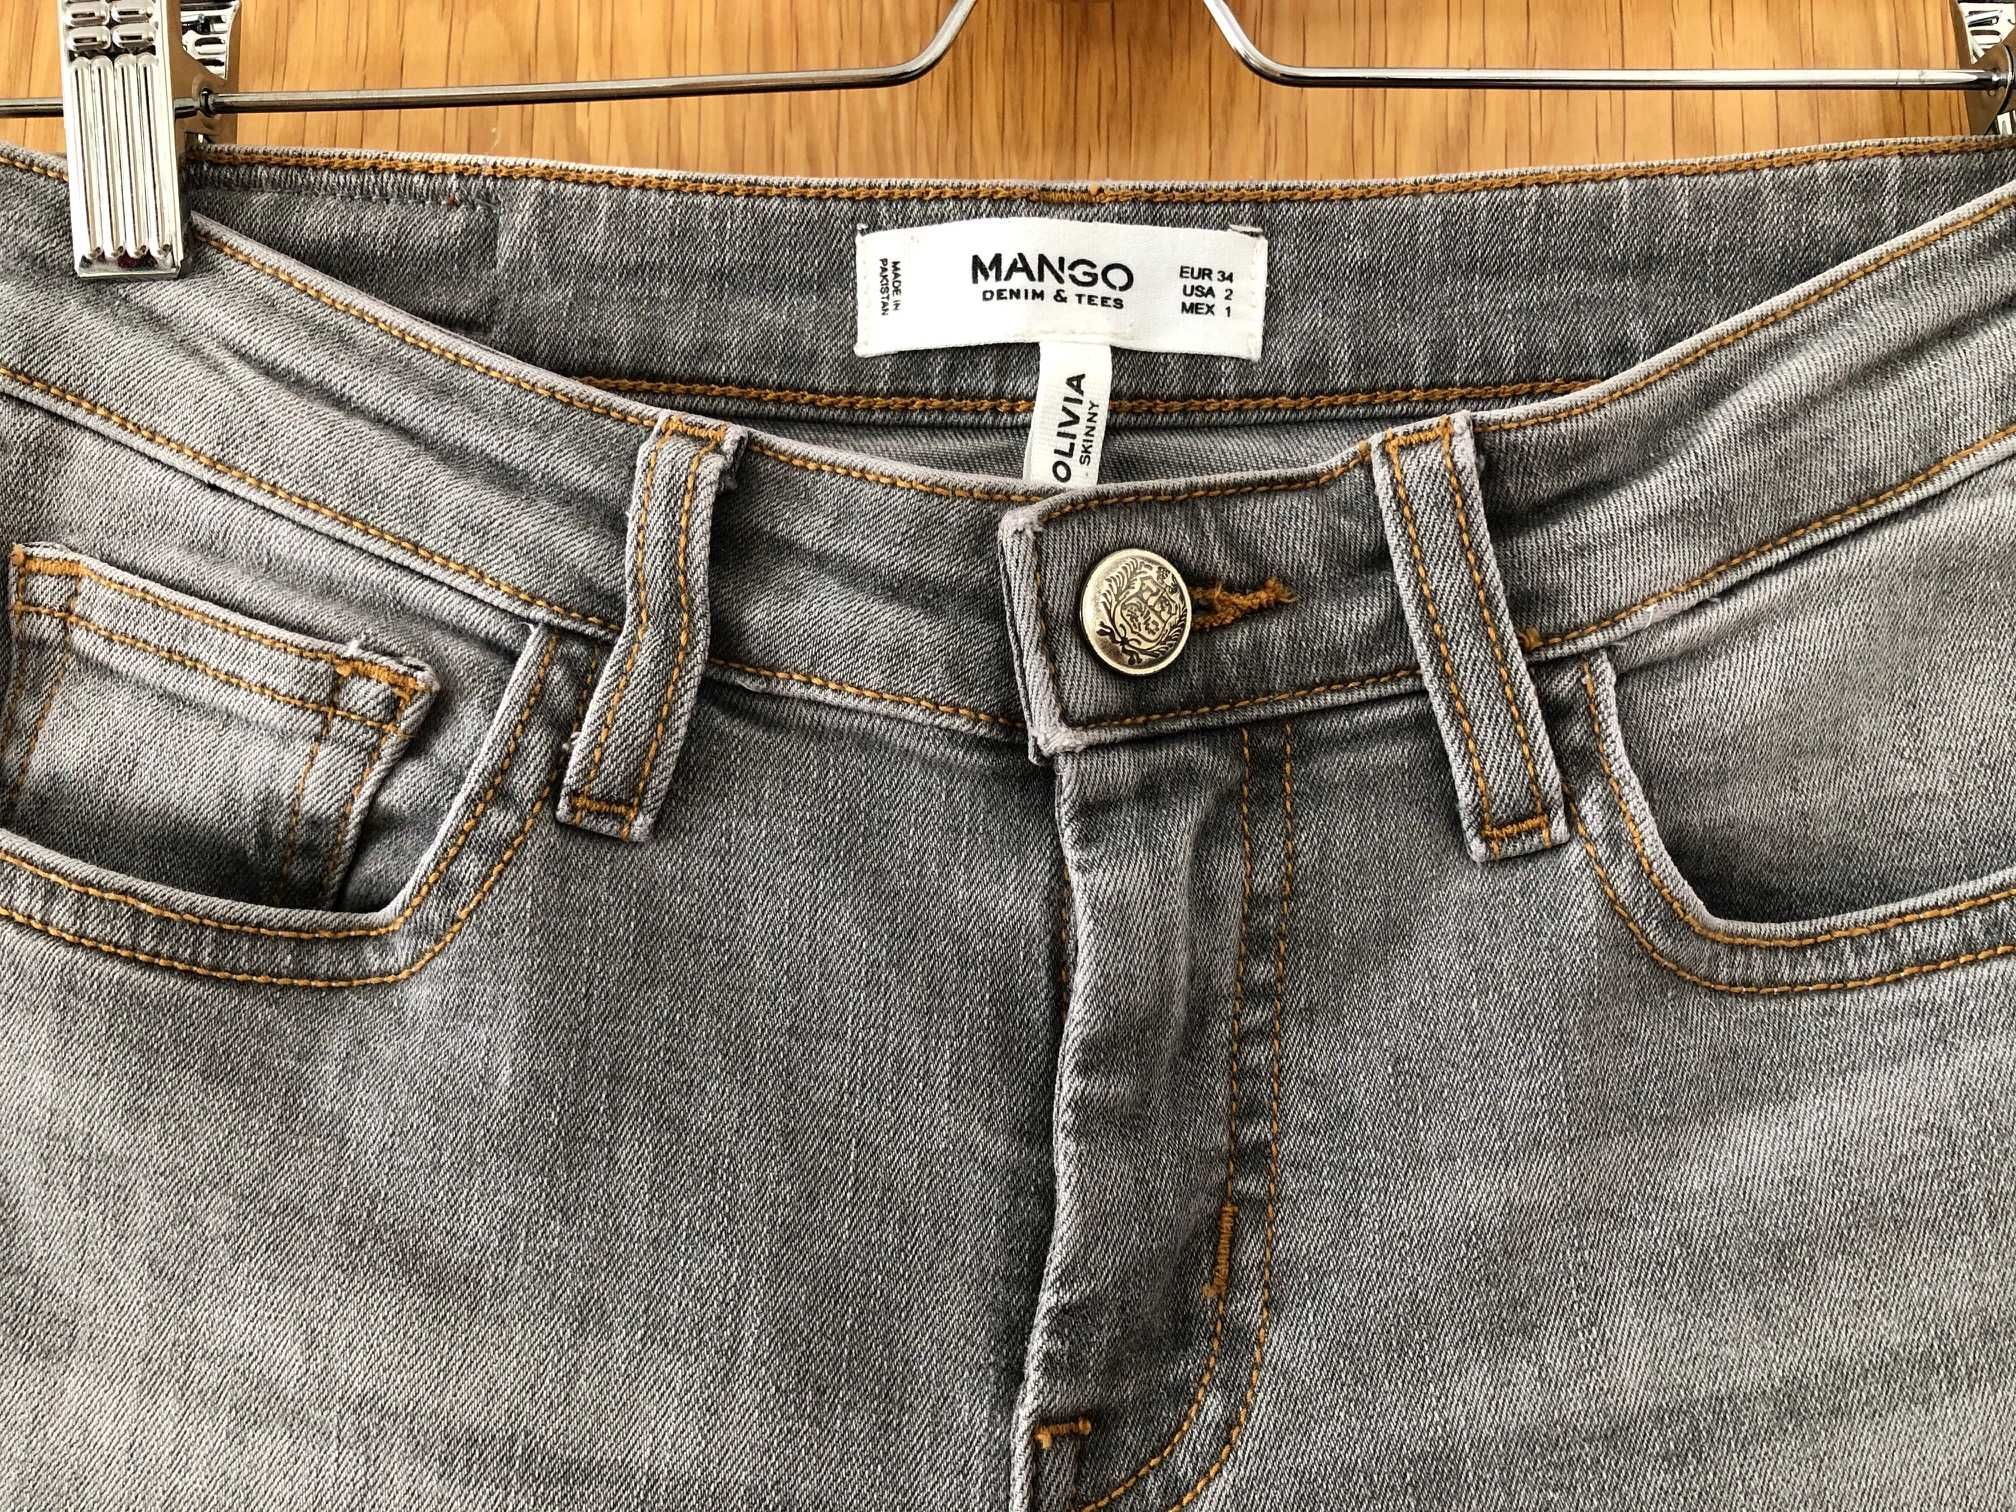 Jeans cinza da Mango (novos) - tamanho 34